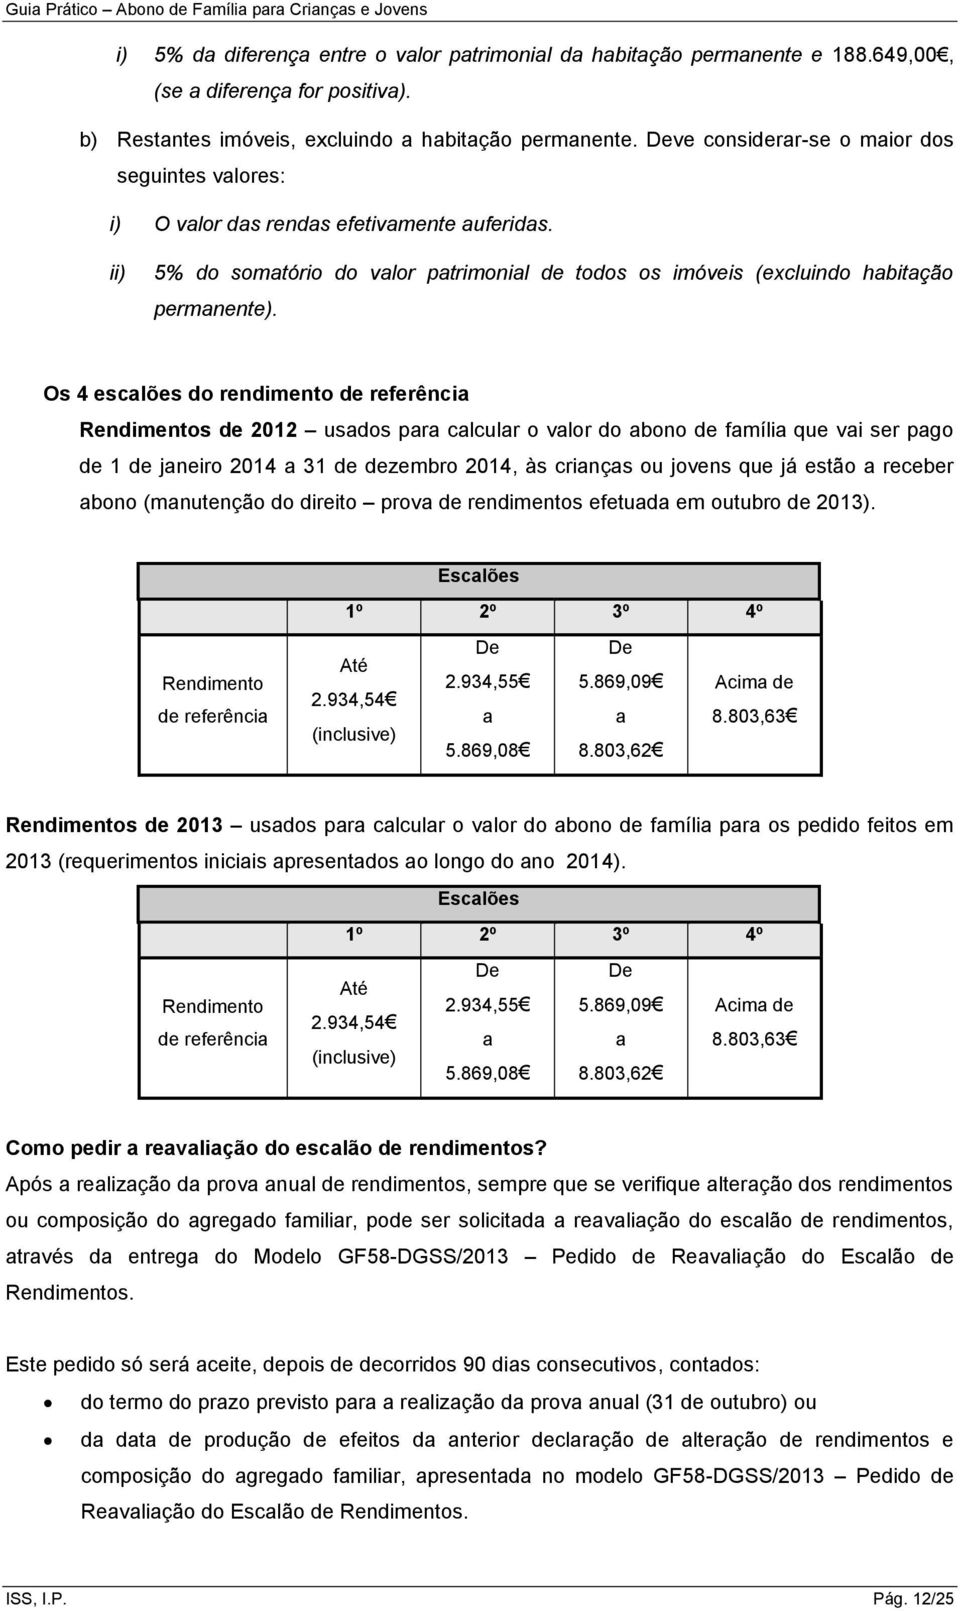 Os 4 escalões do rendimento de referência Rendimentos de 2012 usados para calcular o valor do abono de família que vai ser pago de 1 de janeiro 2014 a 31 de dezembro 2014, às crianças ou jovens que